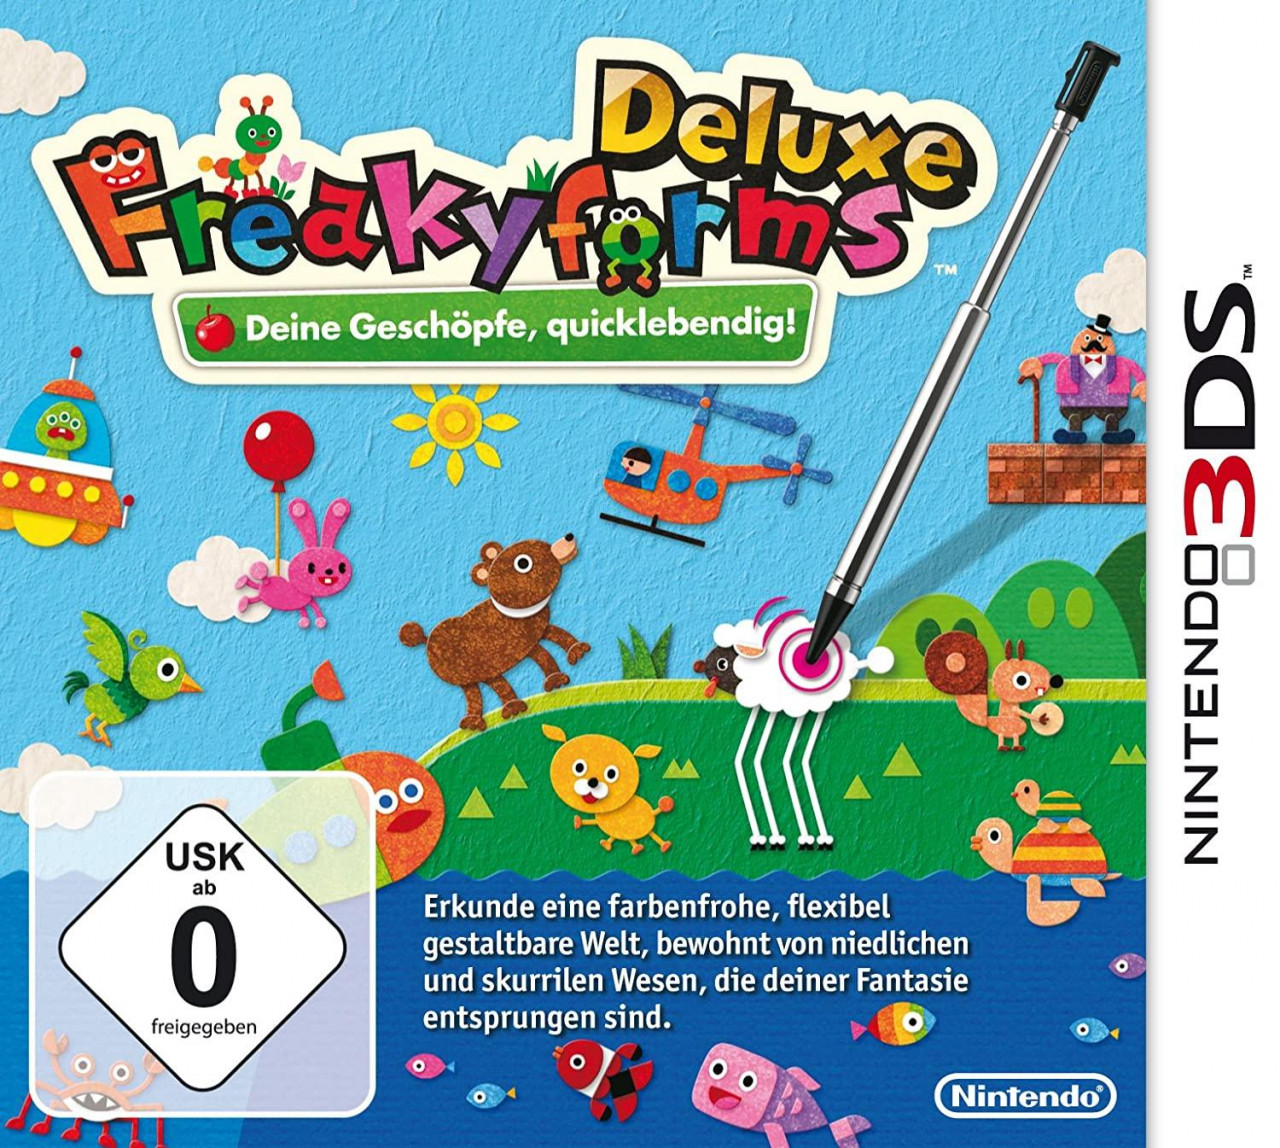 Freakyforms Deluxe (Nintendo 3DS, gebraucht) **